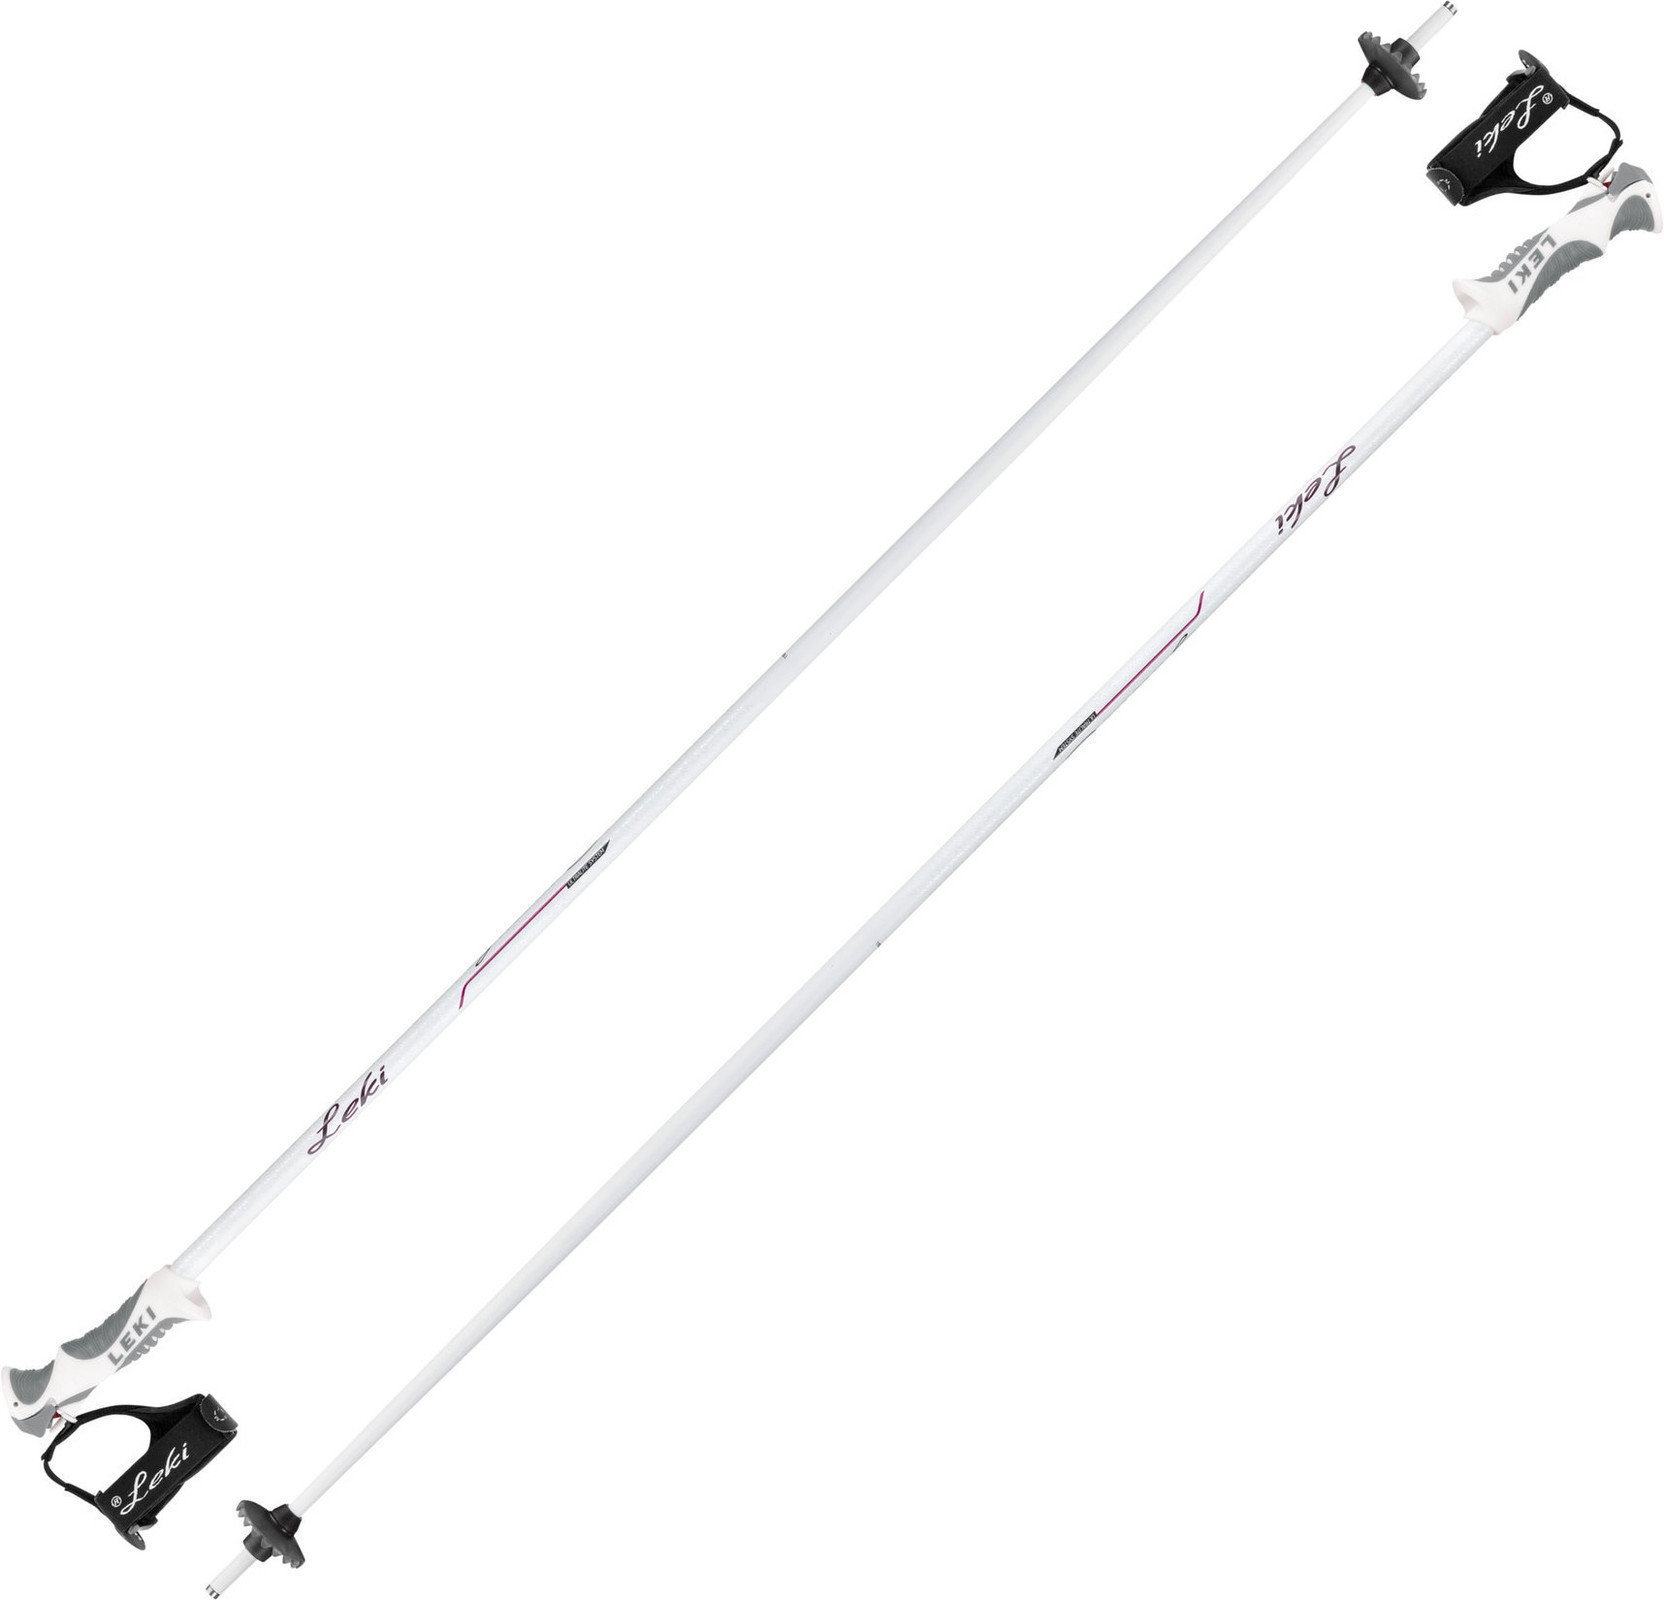 Ski-stokken Leki Giulia S White/Anthracite/Berry 115 cm Ski-stokken